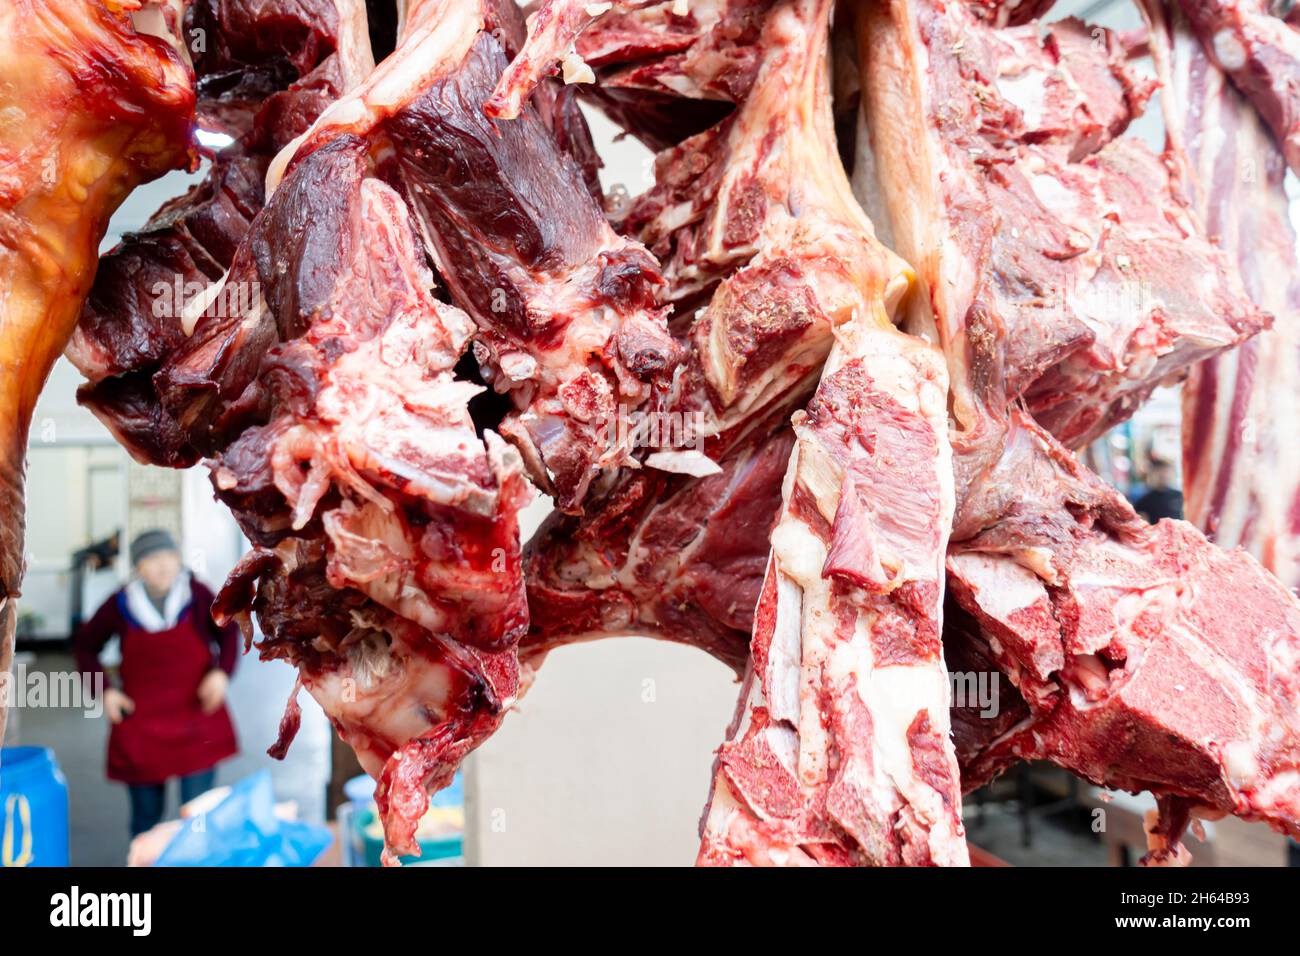 Gehackte, geschnittene Stücke rohen Fleisches auf Knochen, die zum Verkauf auf dem Altyn Orda Markt, dem größten Markt in Almaty, Kasachstan, bestimmt sind Stockfoto